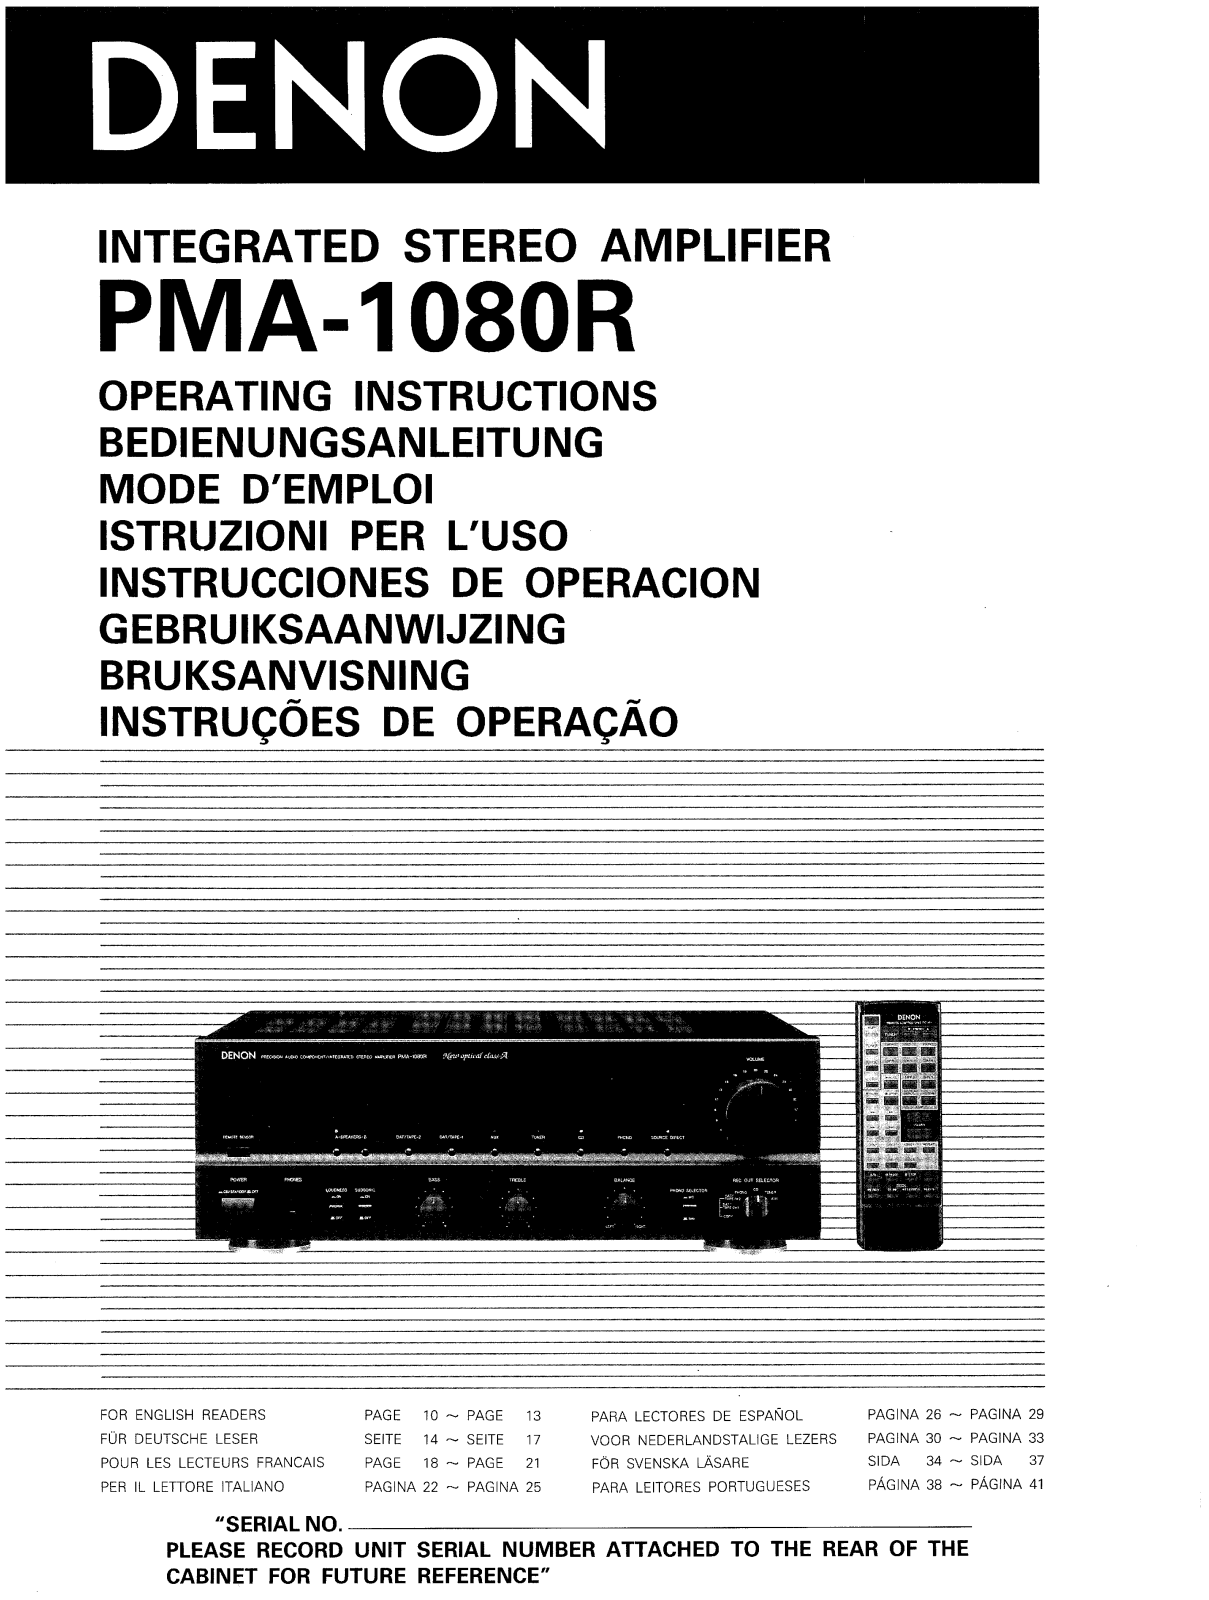 Denon PMA-1080R Owner's Manual